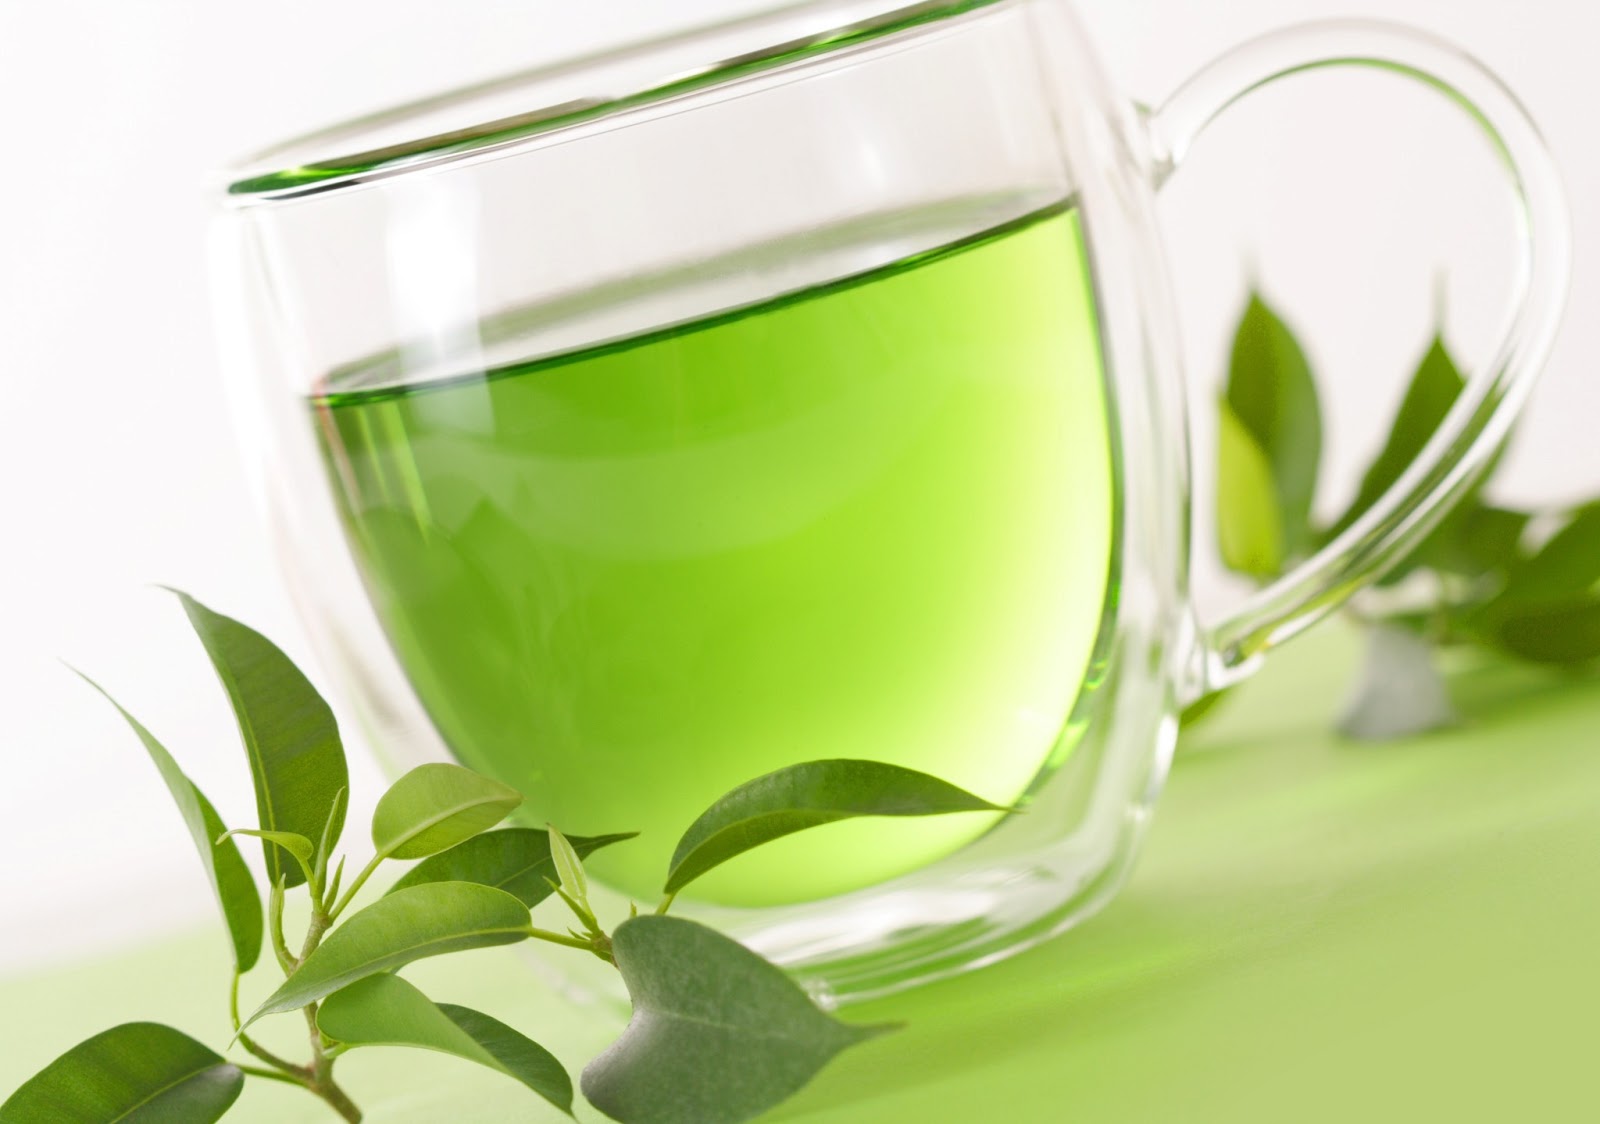 فوائد الشاي الأخضر للتخسيس.. احصلي على جسم رشيق بهذا المشروب لن تصدقي النتيجة